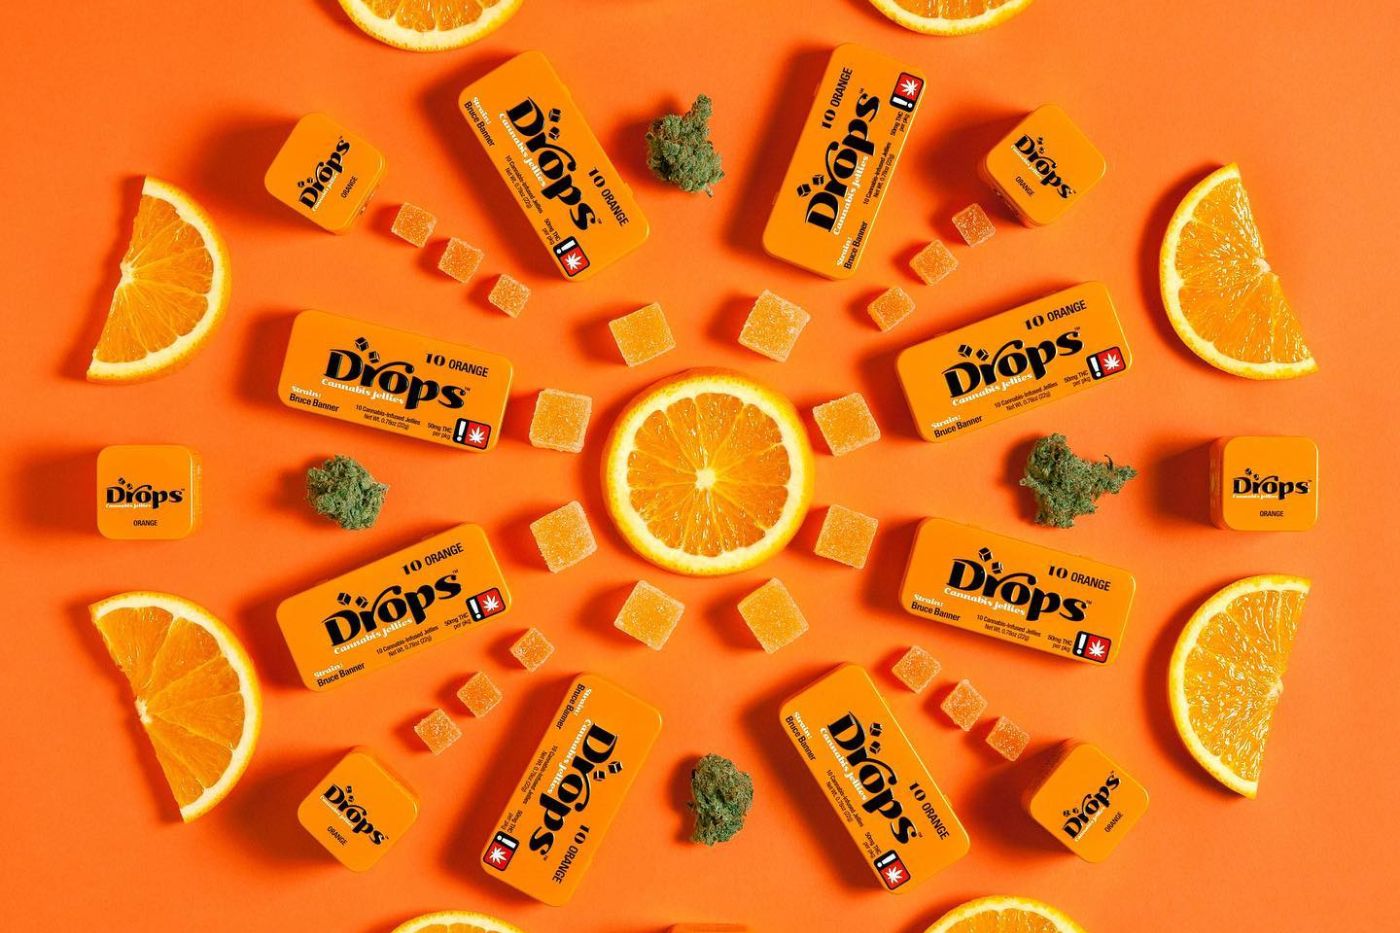 Drops orange cannabis gummies